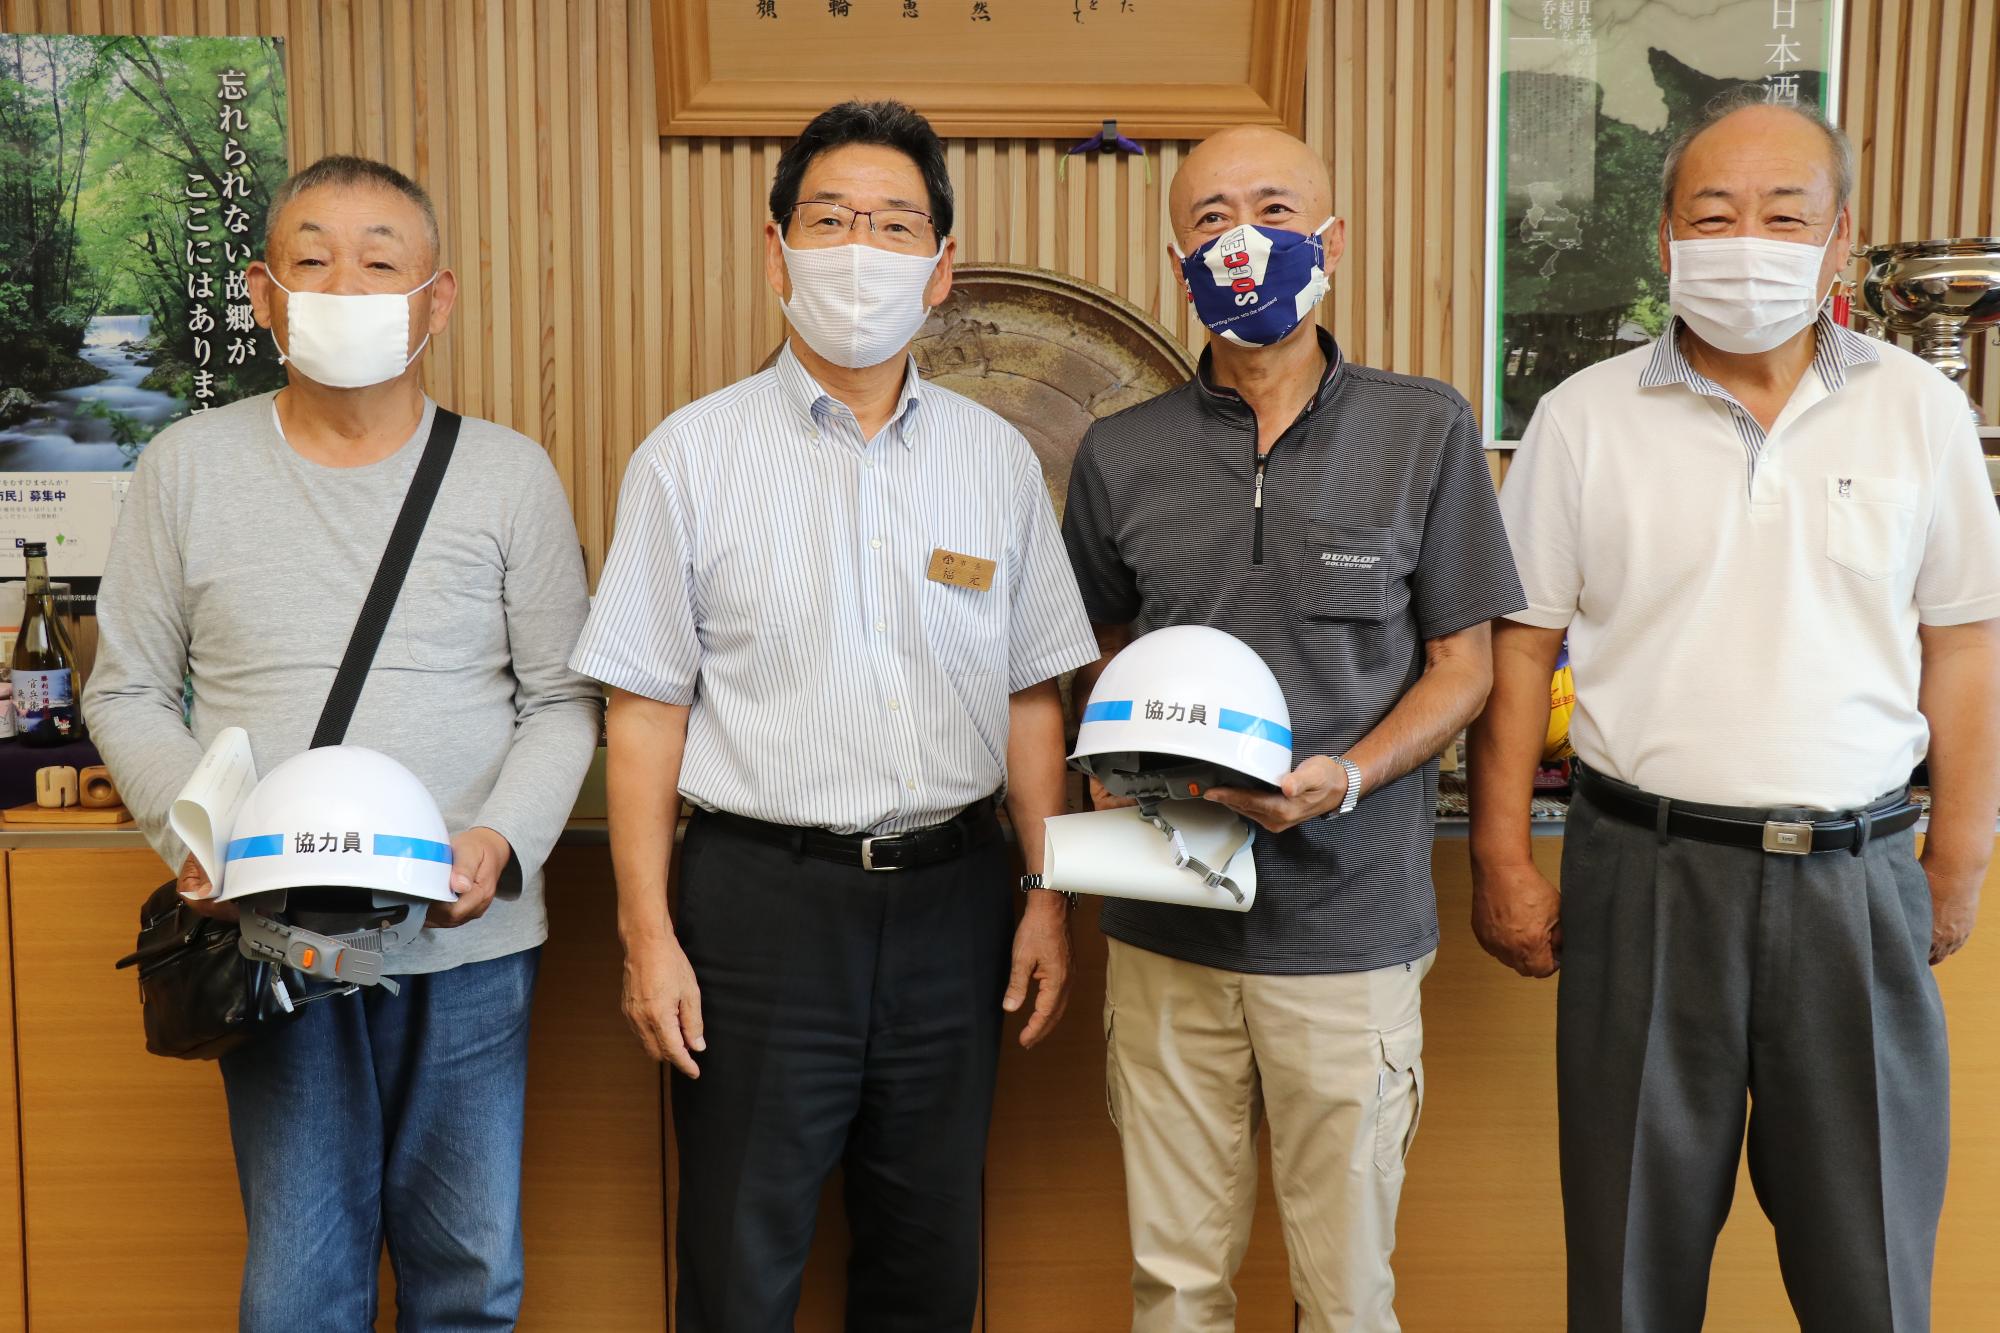 左から岡本さん、市長、清水さんが並んで笑っている写真